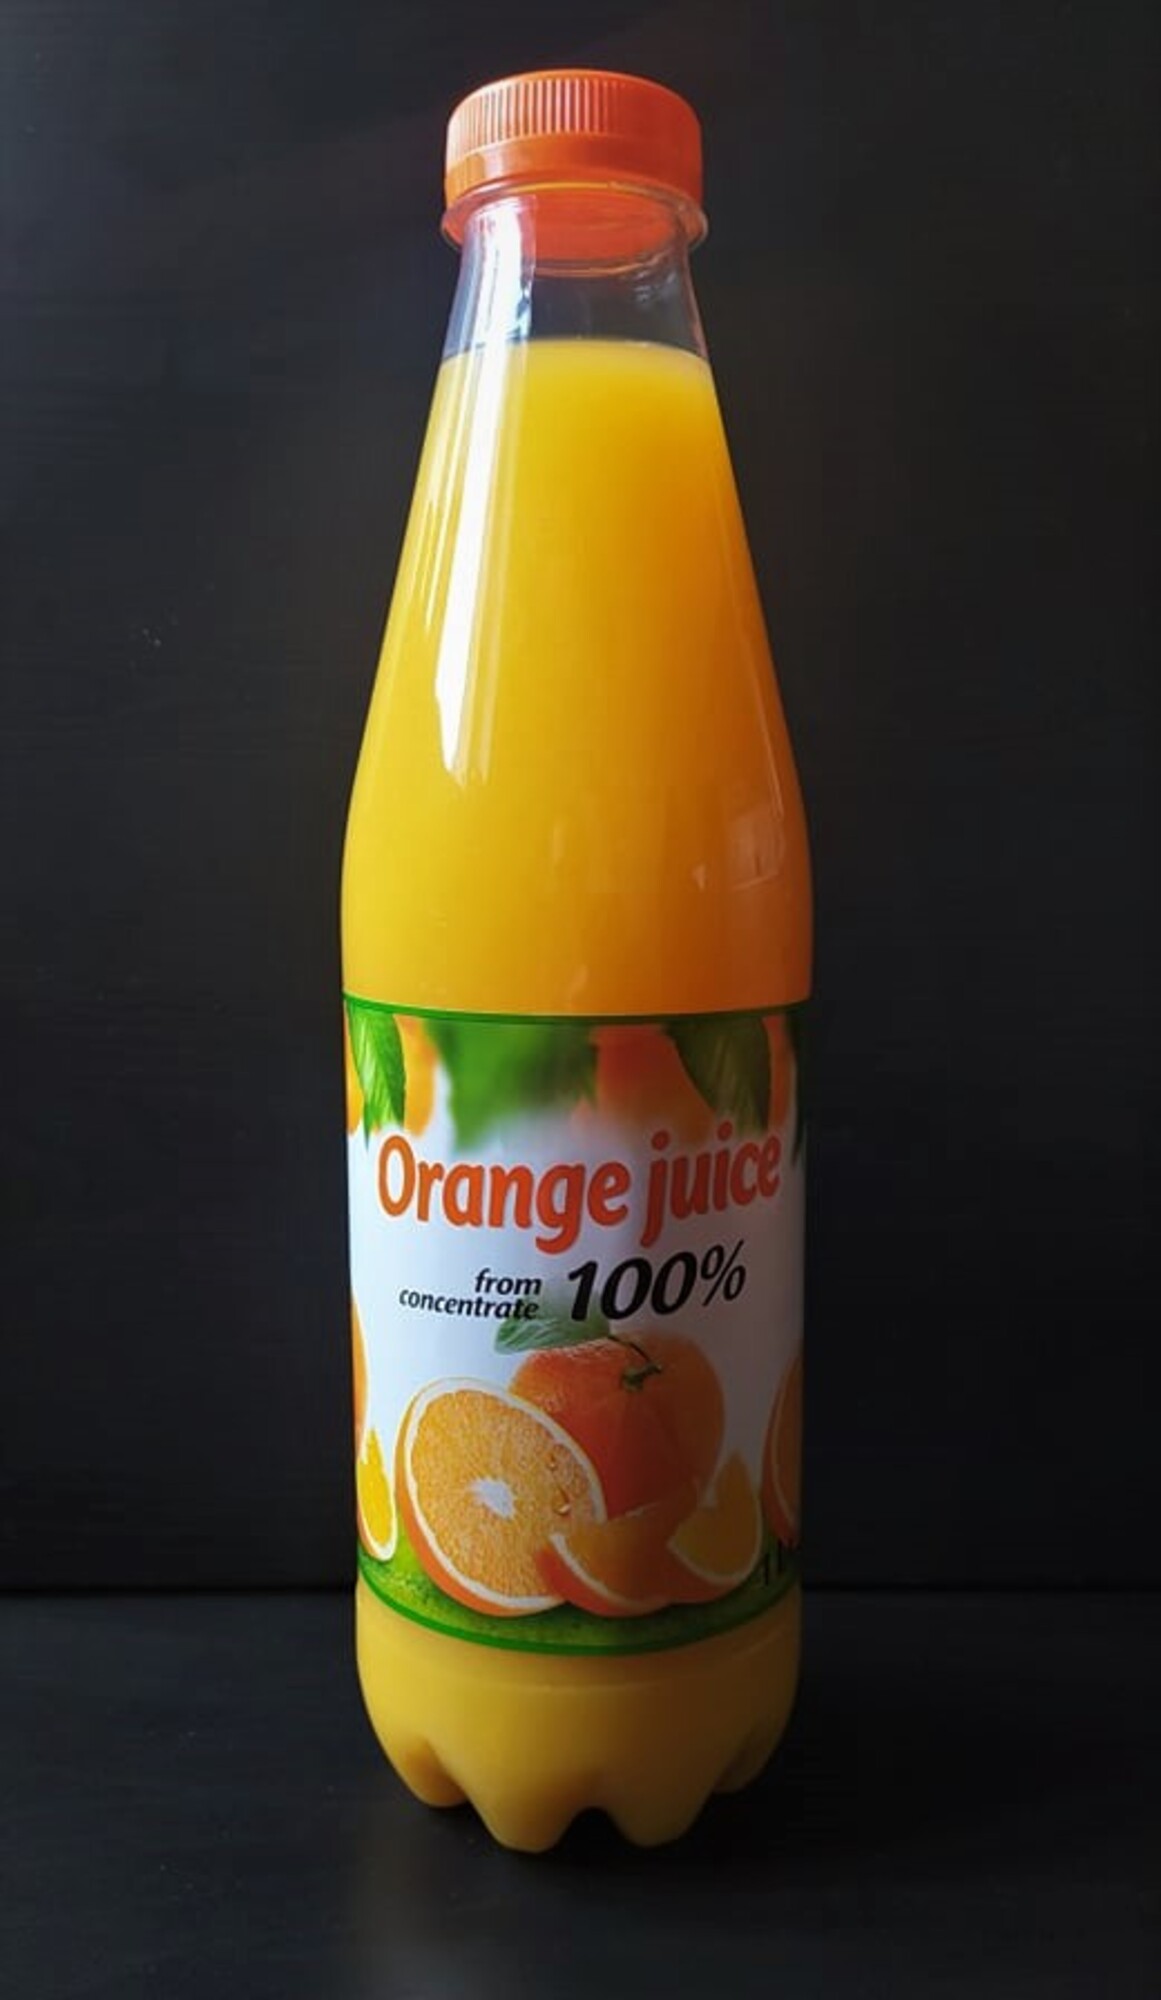 test džus pomeranč 2020 lidl